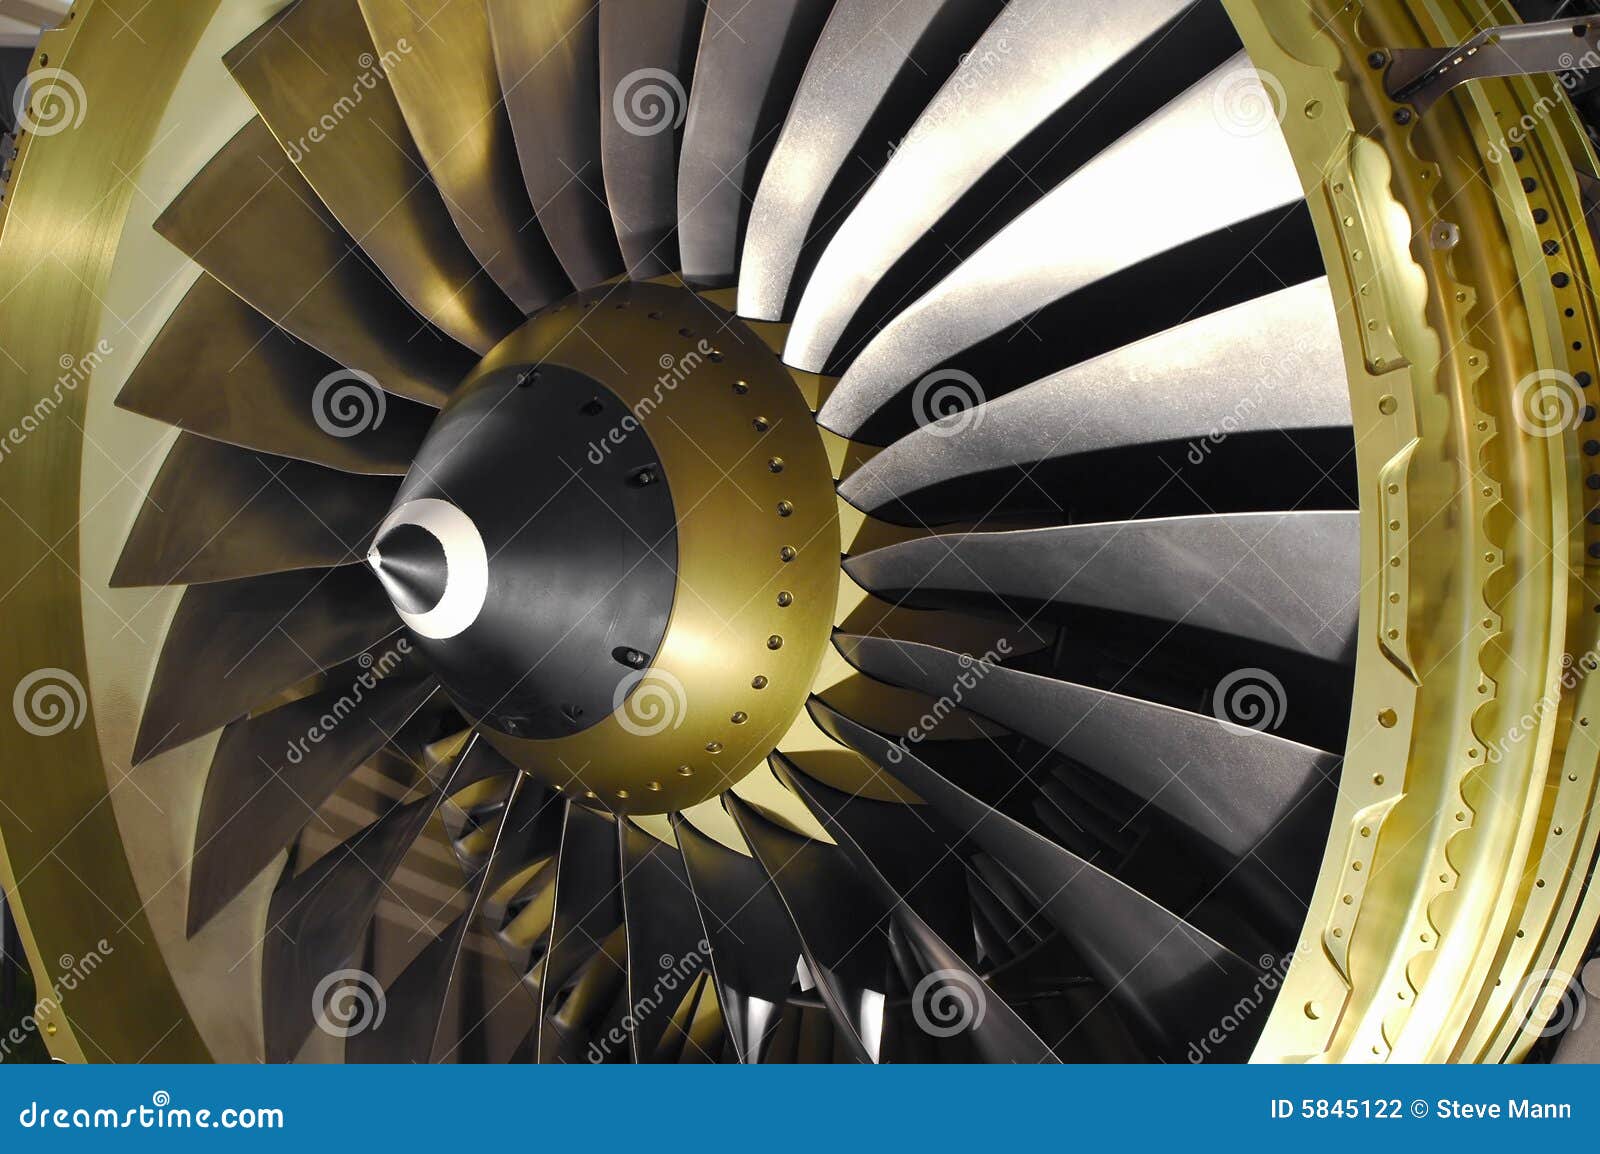 jet engine blades